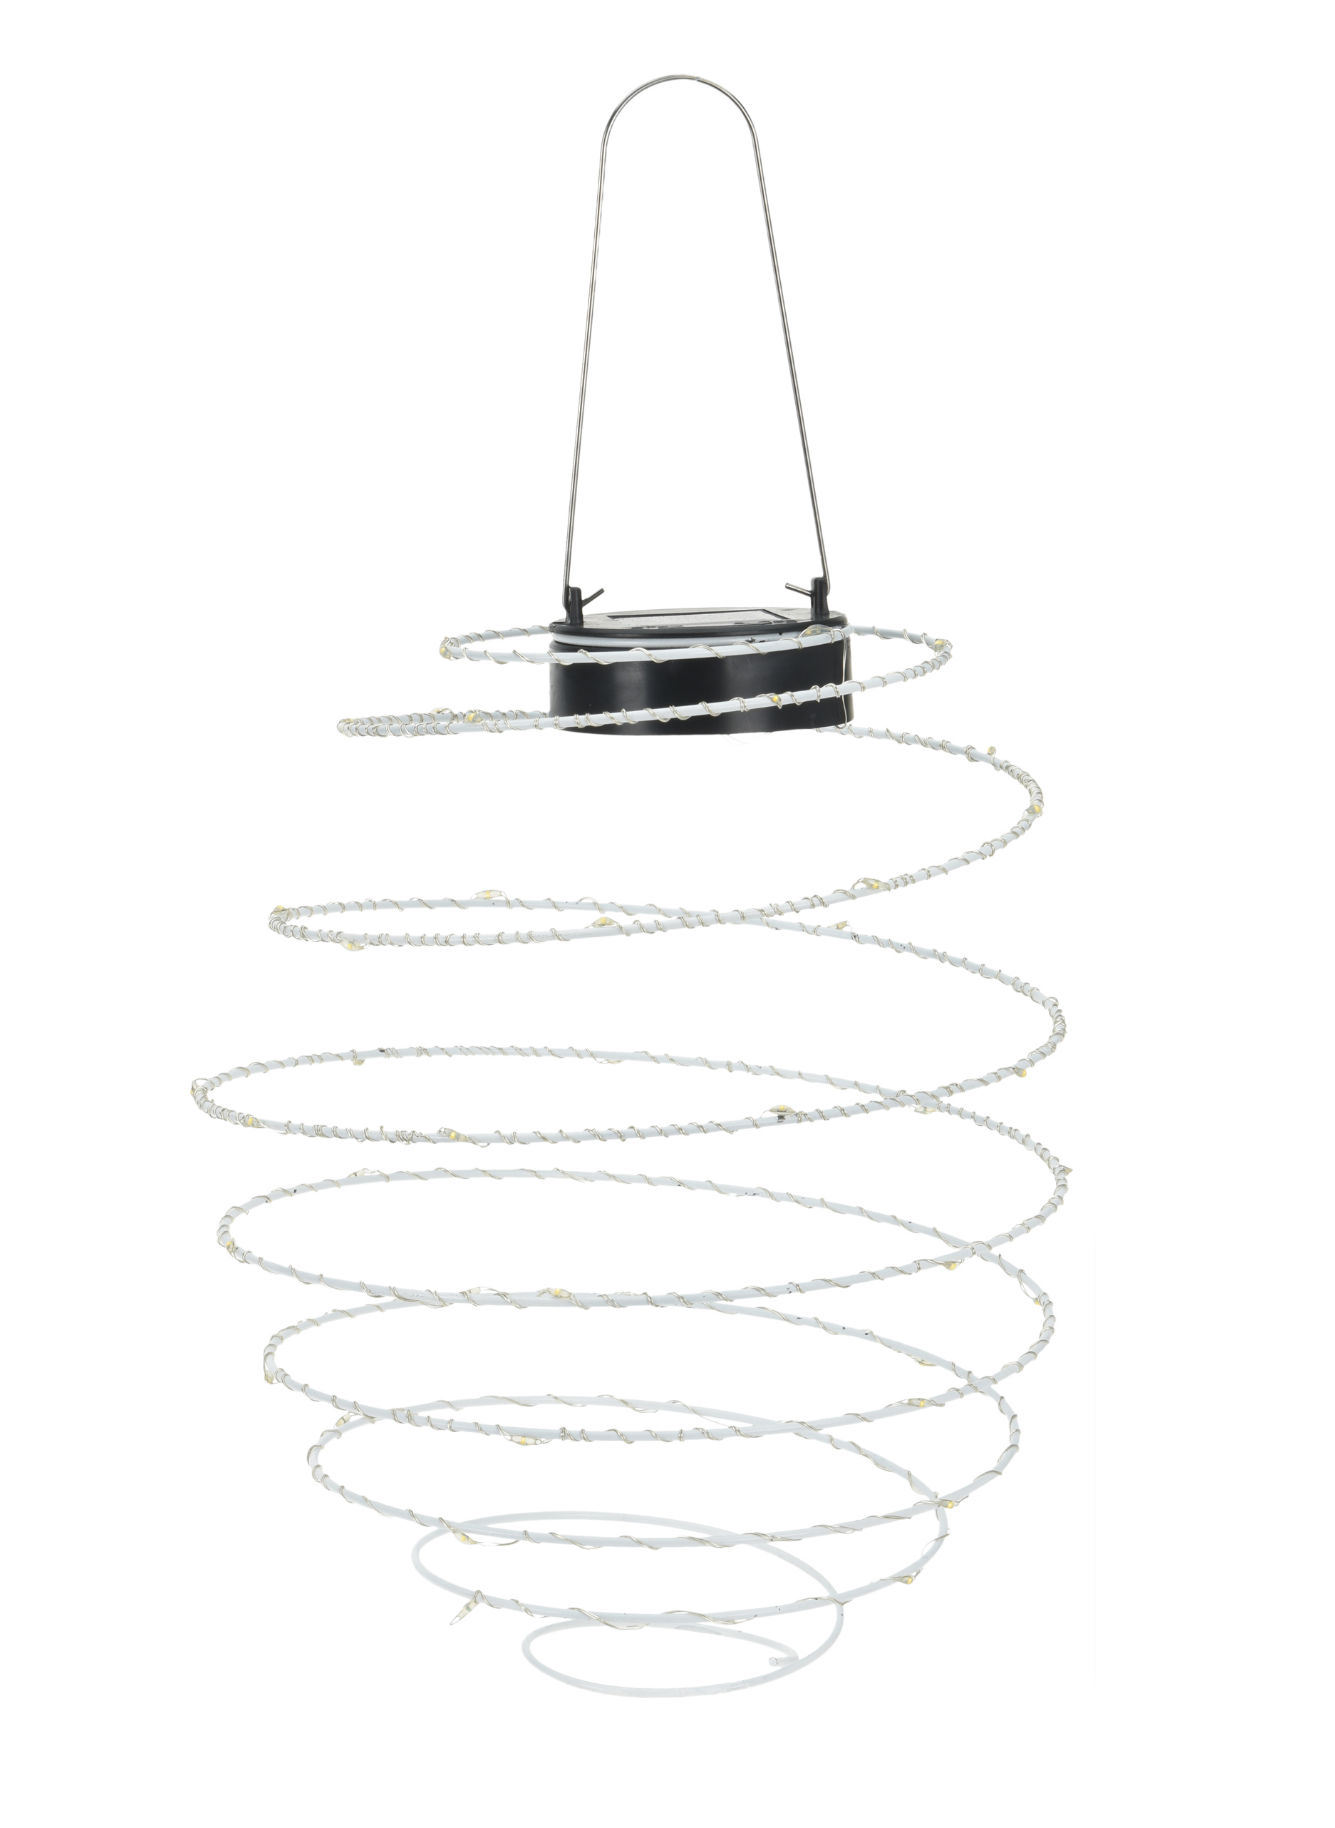 LED Solar Lampion Spirale - 40 LED - Garten Hängeleuchte 